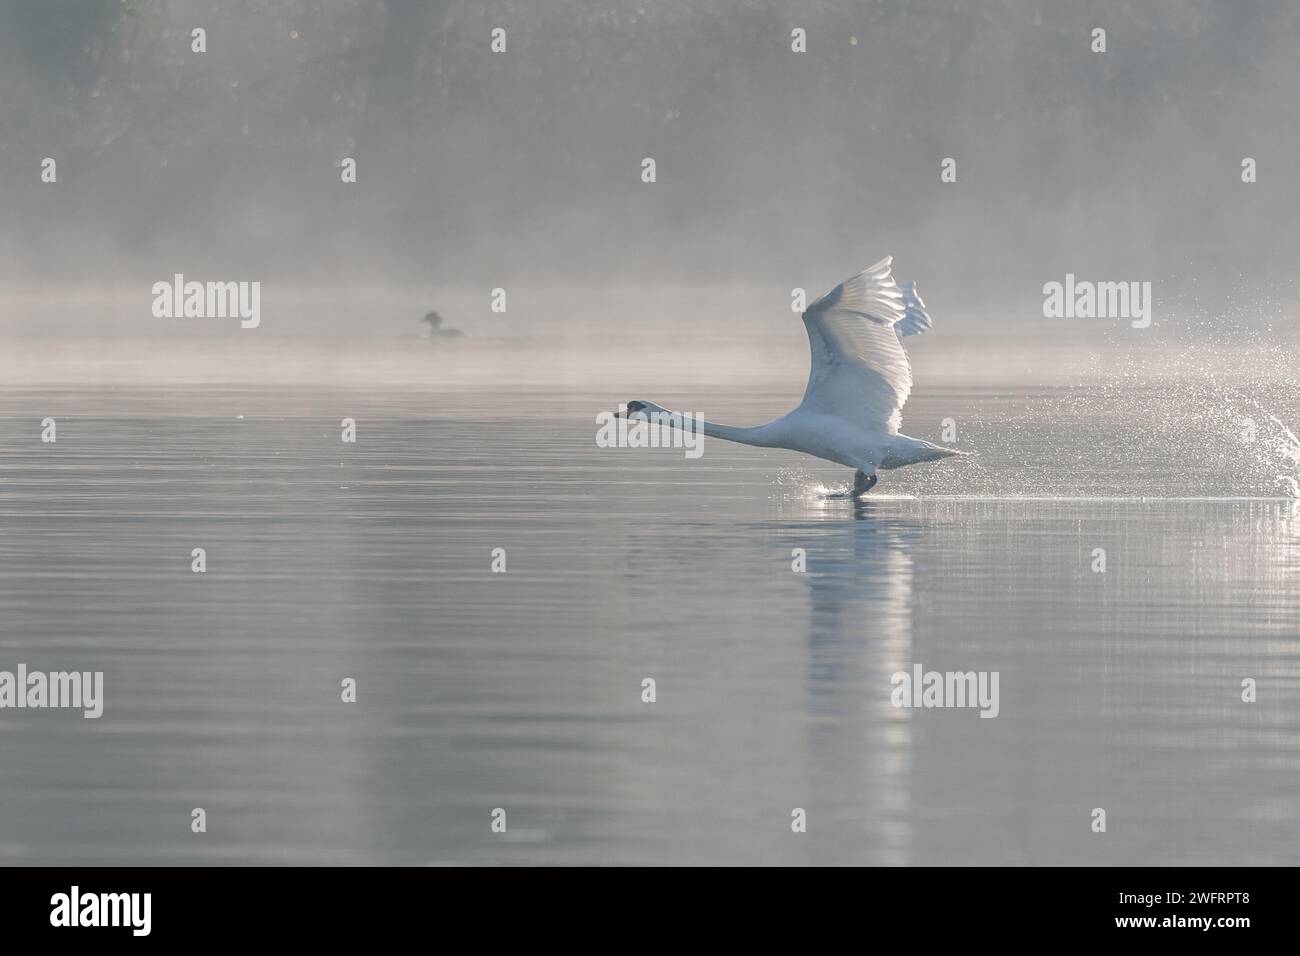 Cygne muet (Cygnus olor) au décollage sur l'eau d'un lac, Bas-Rhin, Alsace, Grand est, France, Europe Banque D'Images